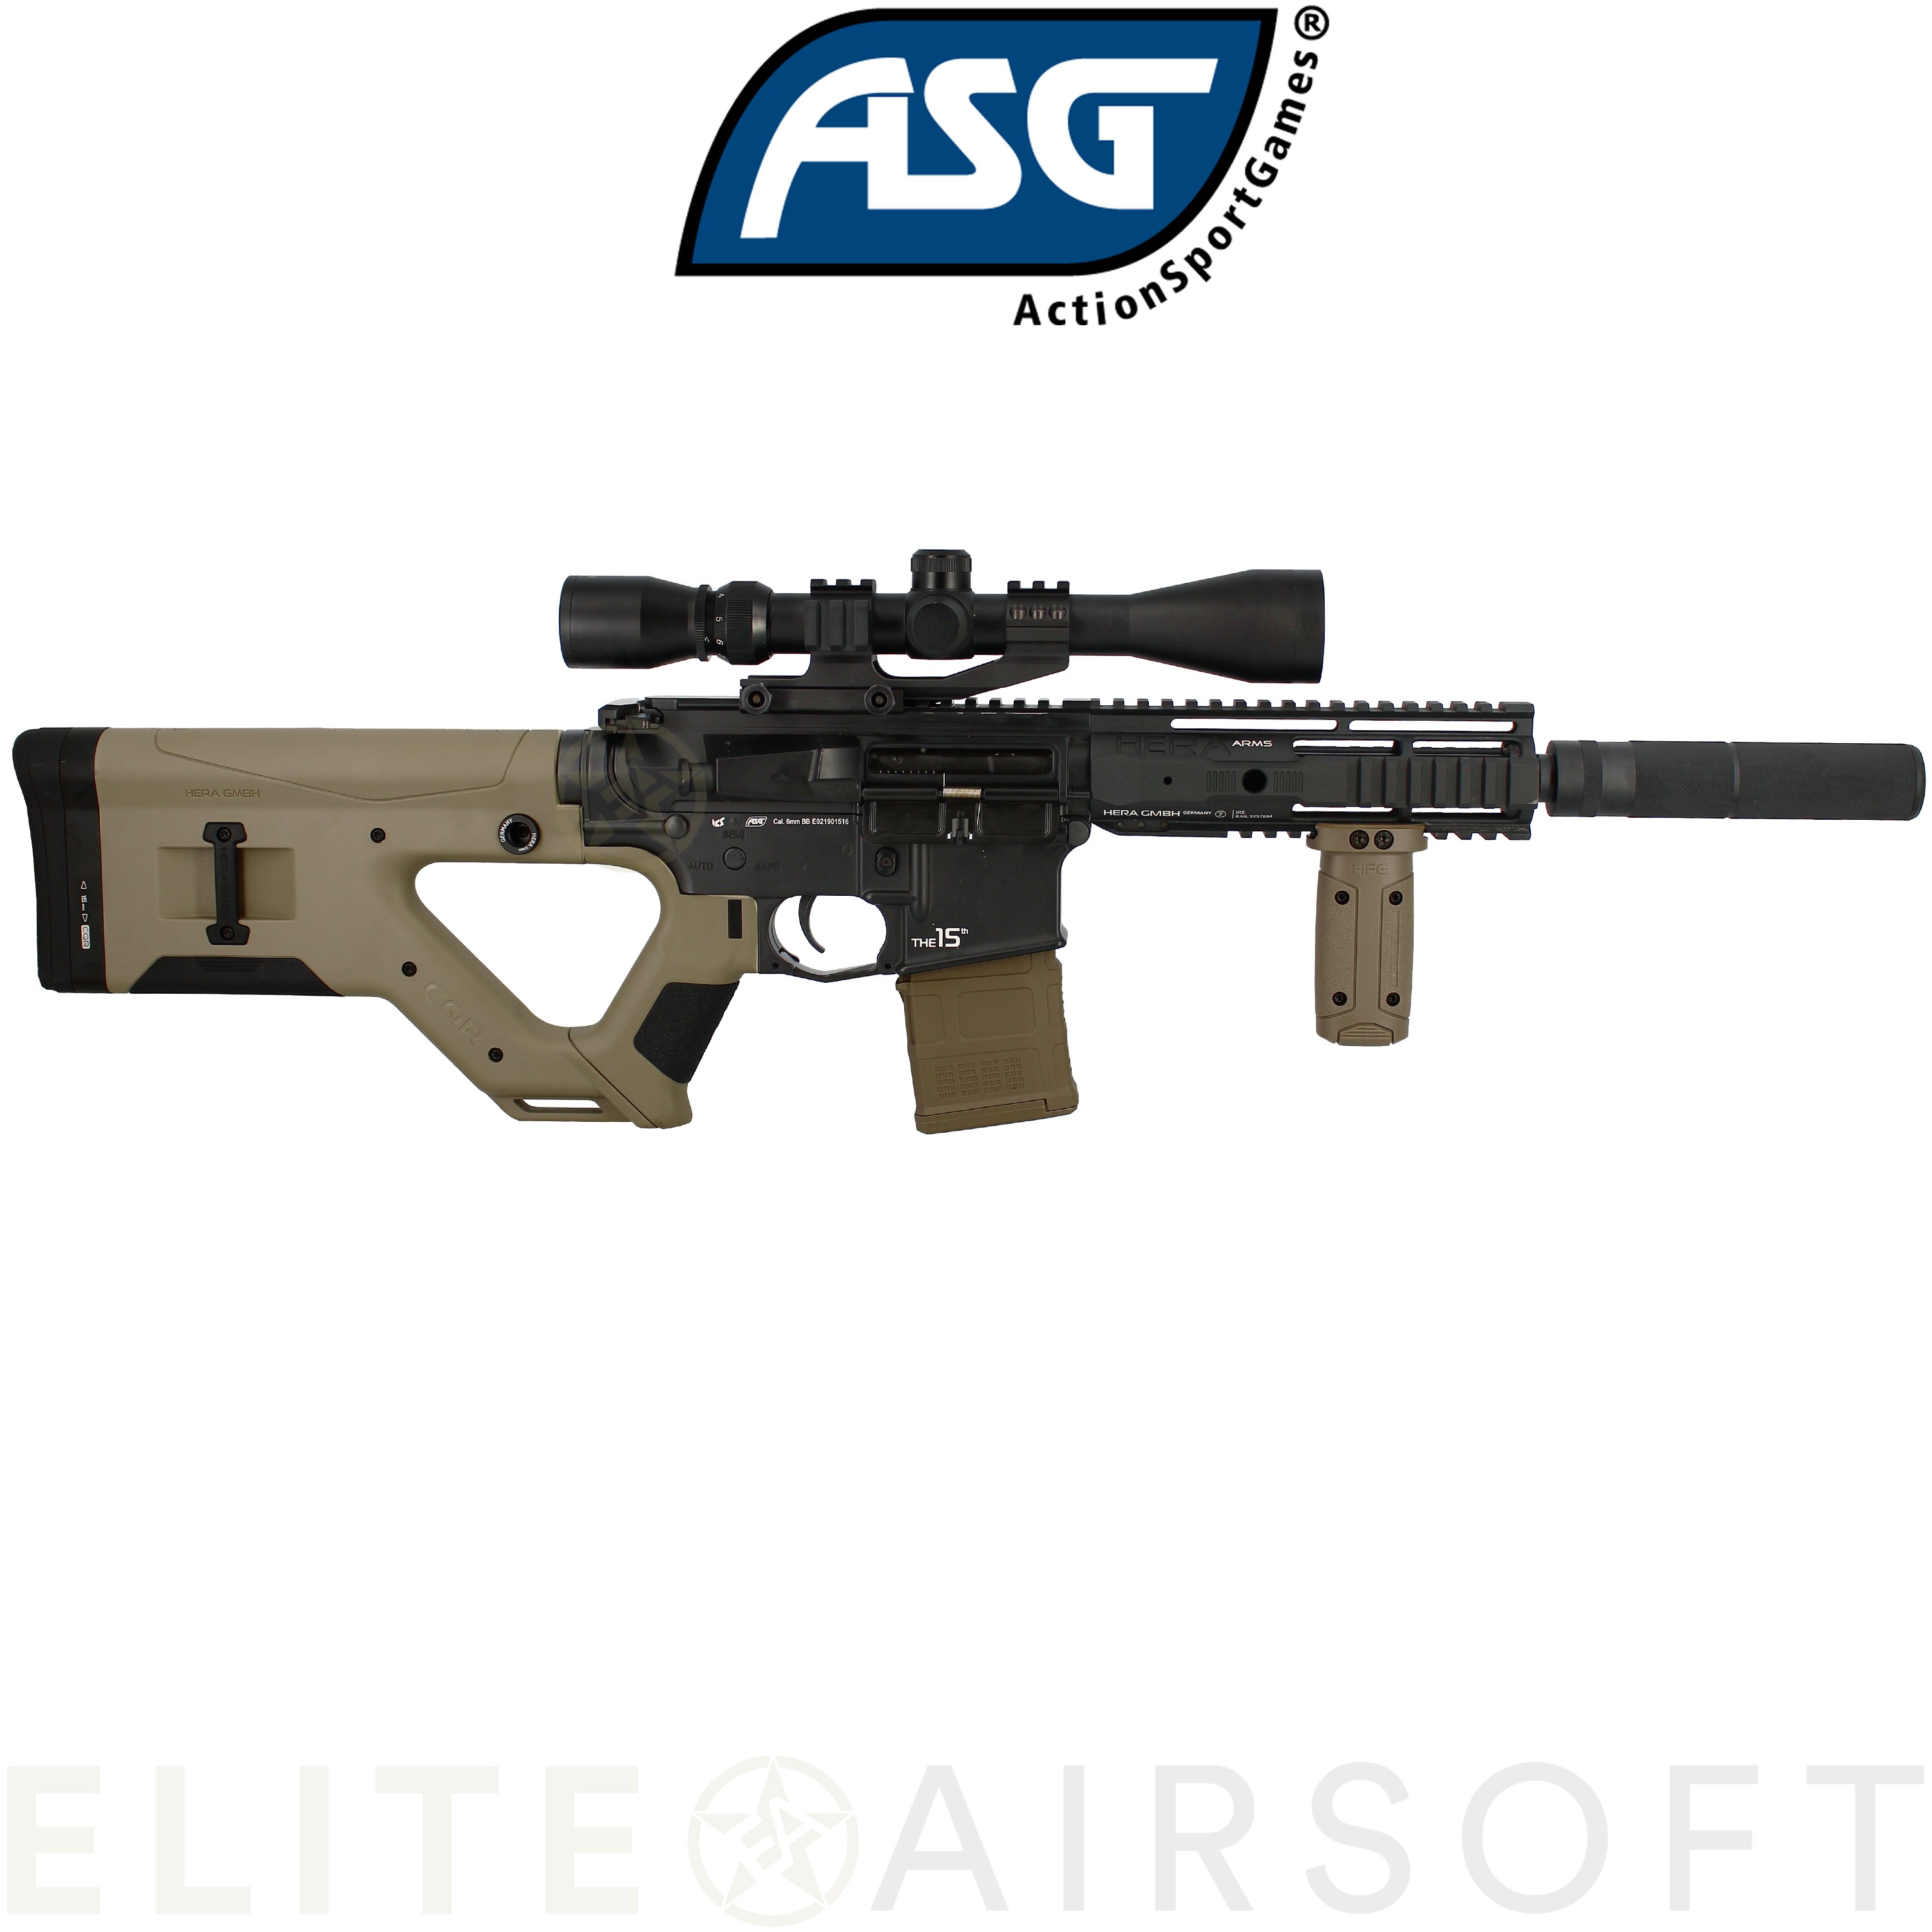 ASG - Carabine Hera Arms CQR SSS en pack - AEG - Desert (1.1 Joules)